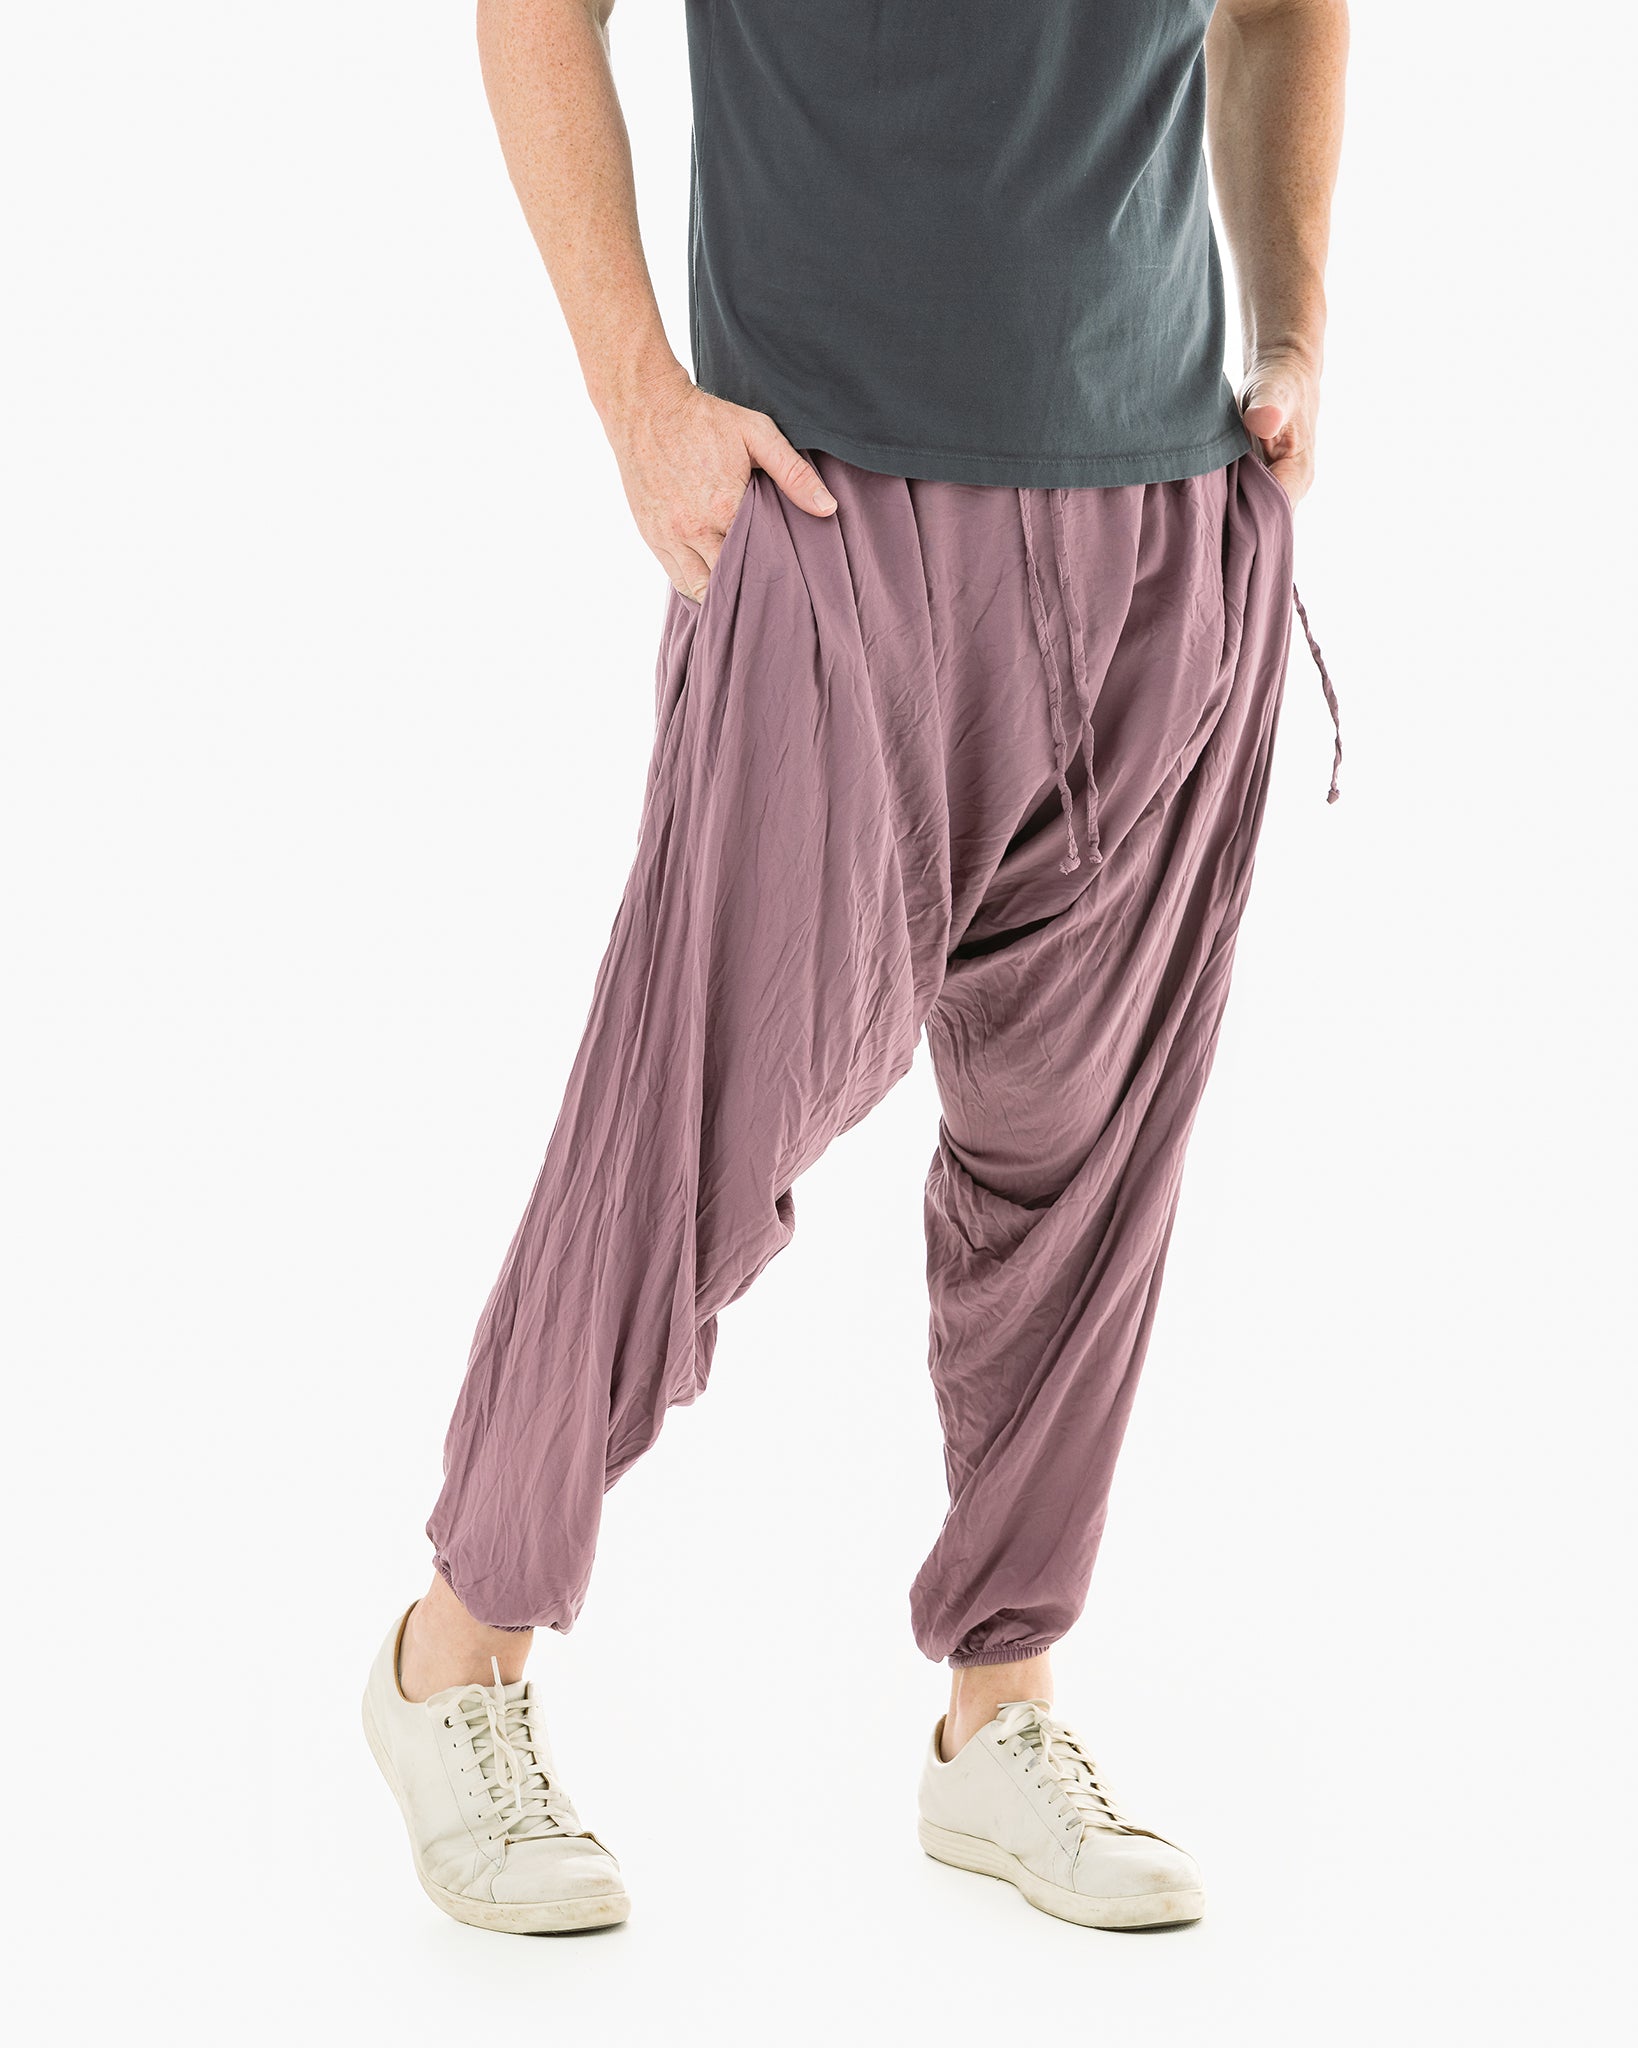 Pants/funky Harem Pants 428 Long Pants. 100% Cotton Fits M-L Size